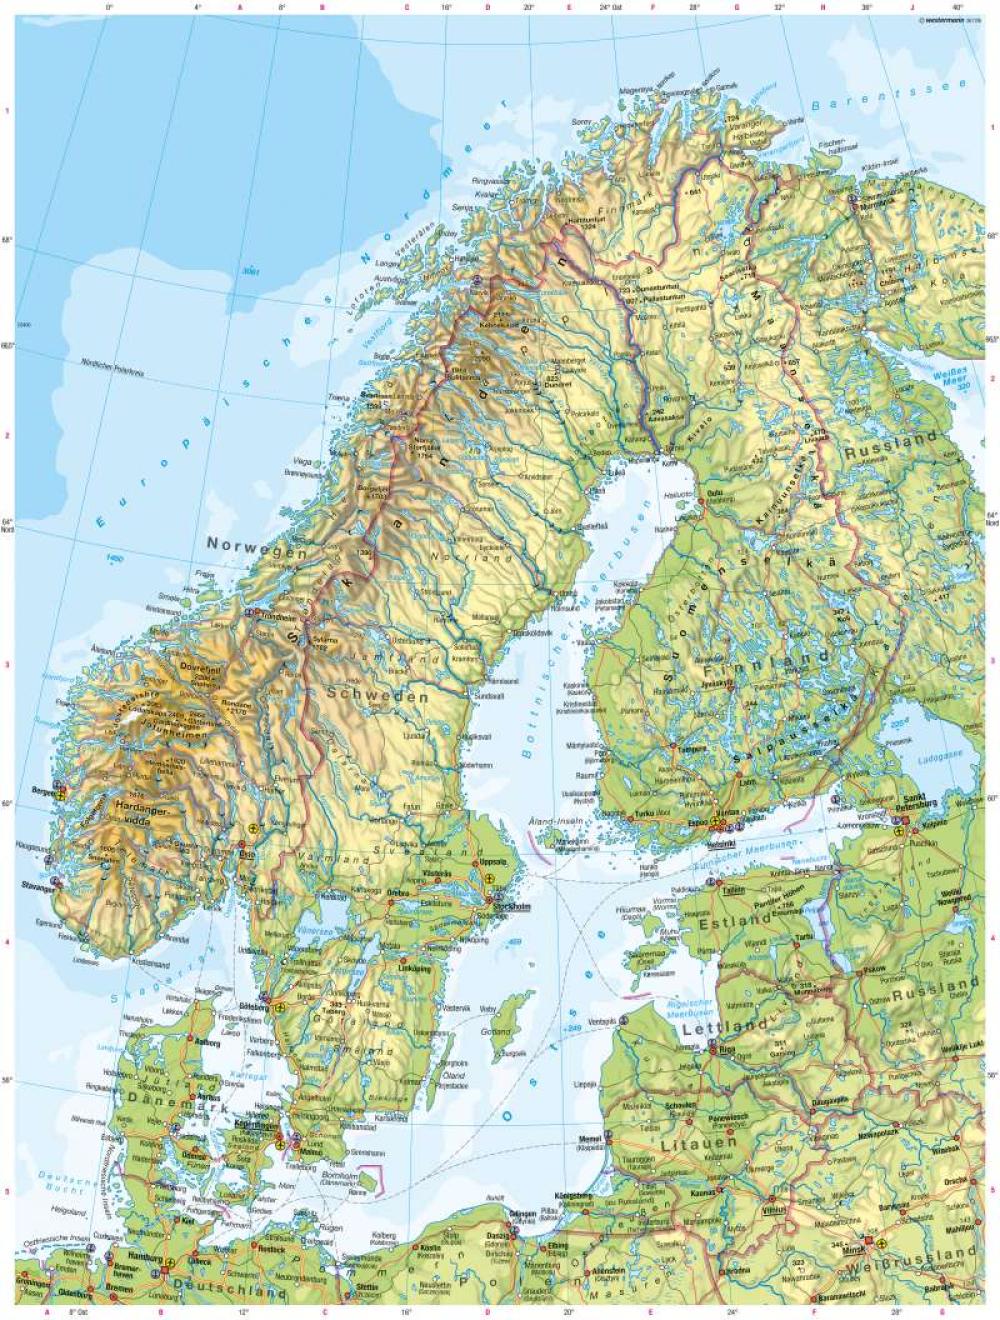 Skandinavien Baltikum Physische Karte 978 3 14 100803 6 106 2 1 Diercke 2023 5160